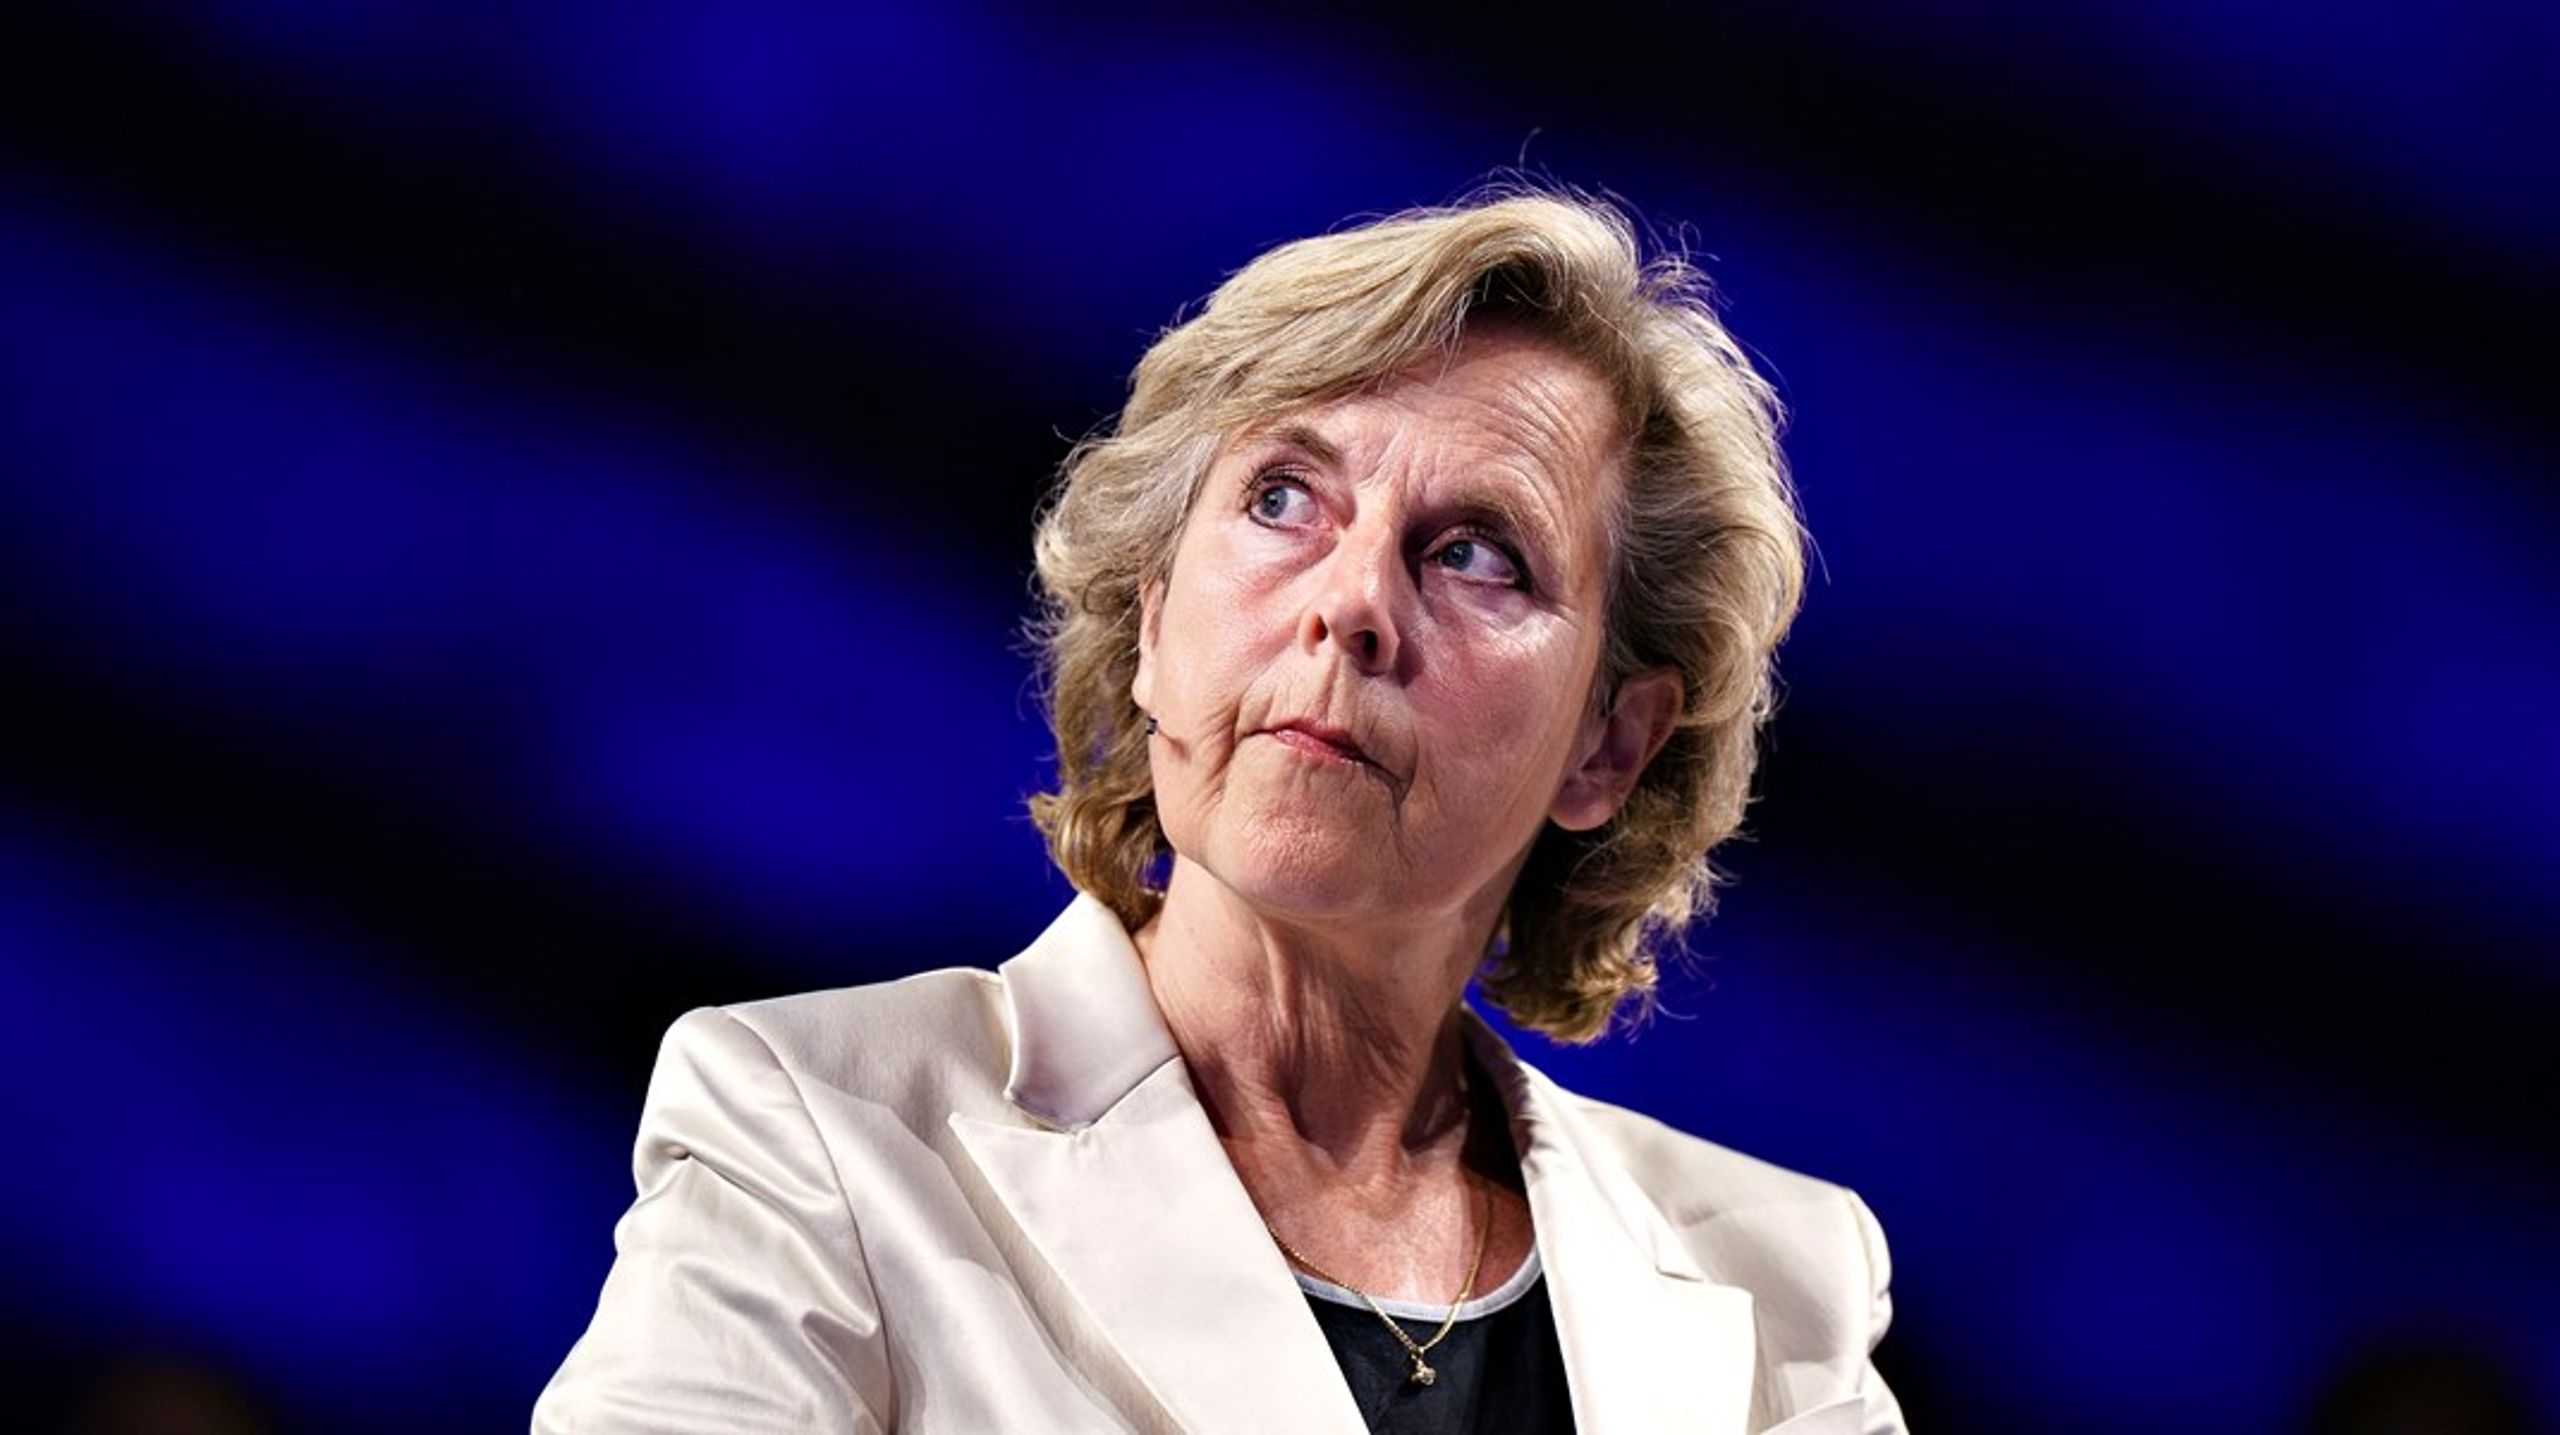 Måske er de lobbyister, der lige nu har travlt med at få udskudt et prissignal og dermed et incitament til hurtigere innovation og omstilling, slet ikke landmandens sande venner, skriver Connie Hedegaard.